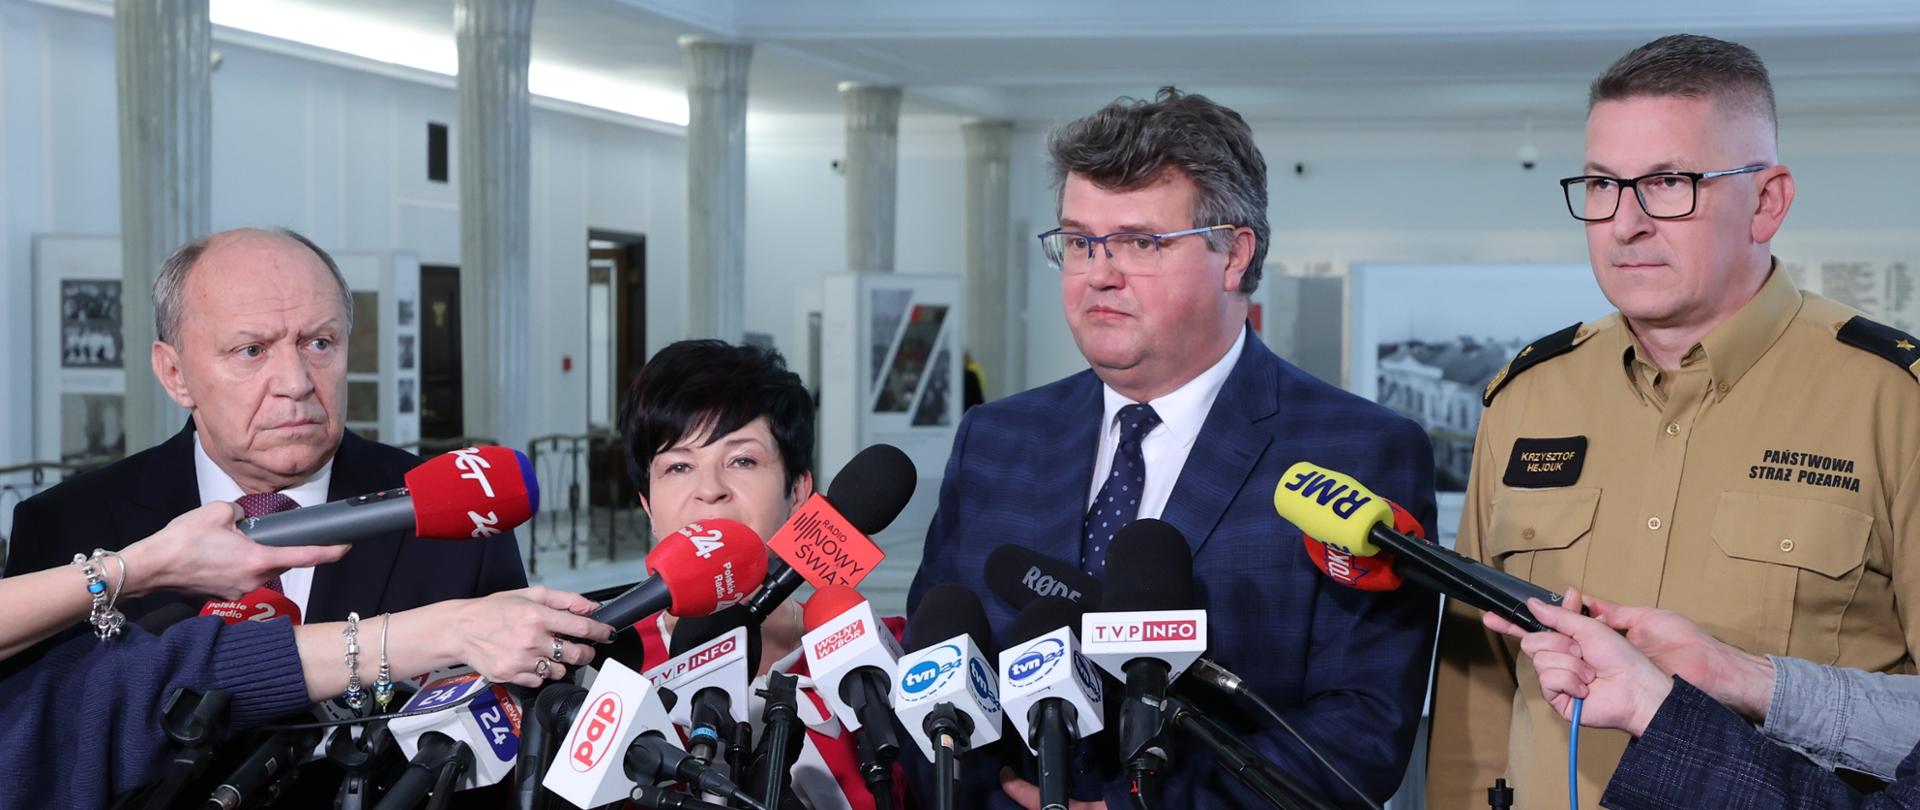 Na zdjęciu widać cztery osoby podczas briefingu prasowego w gmachu Sejmu RP